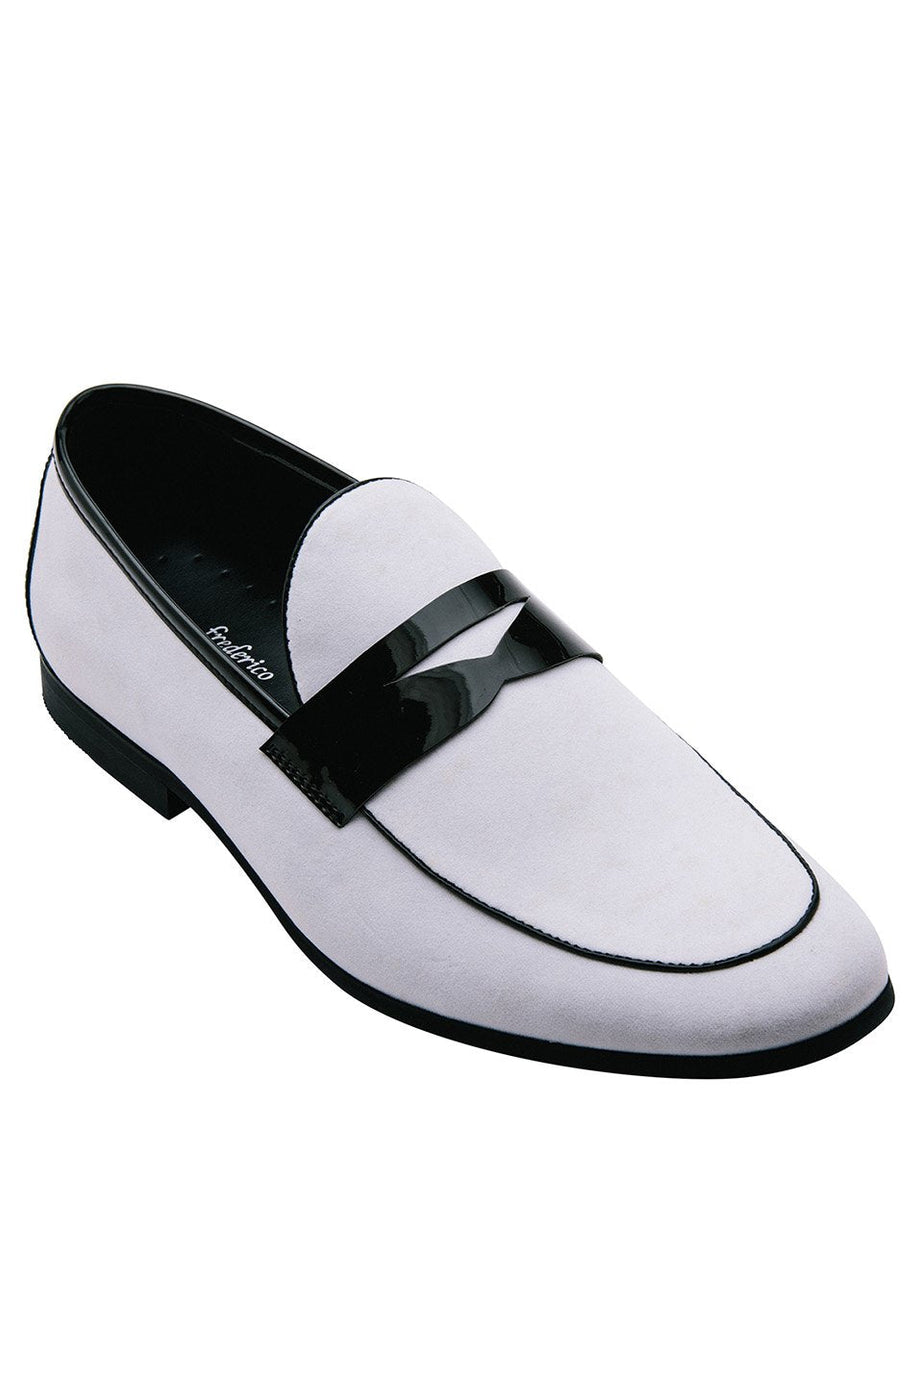 Frederico Leone "New Yorker" White Suede Frederico Leone Tuxedo Shoes